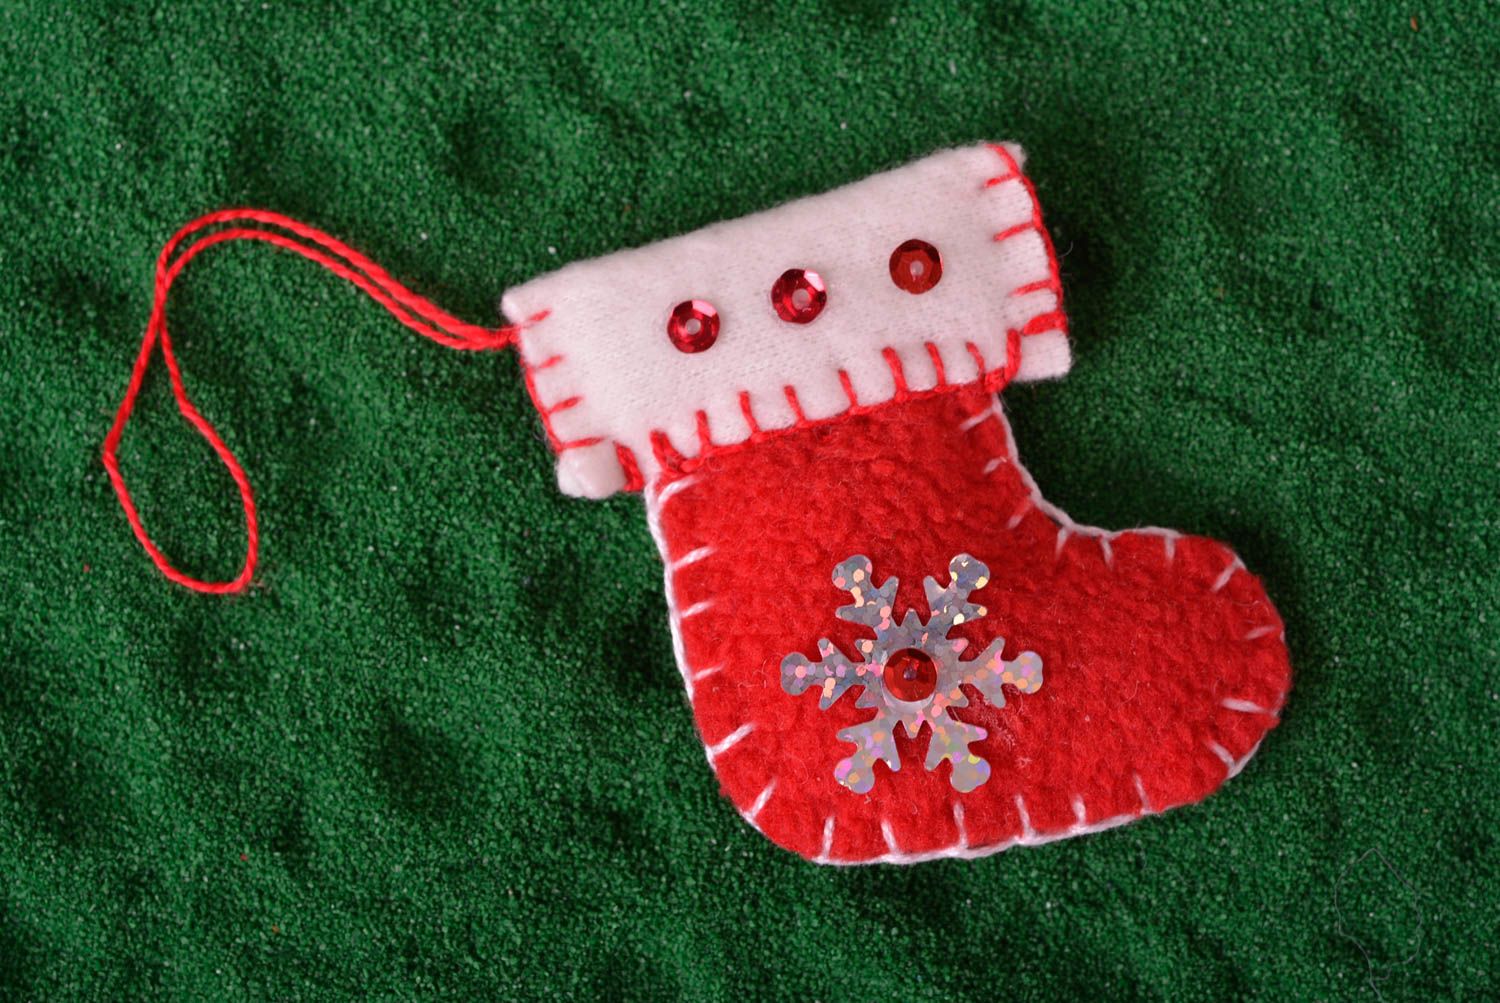 Handmade souvenir unusual toy for Christmas tree decor ideas felt Christmas toy photo 1